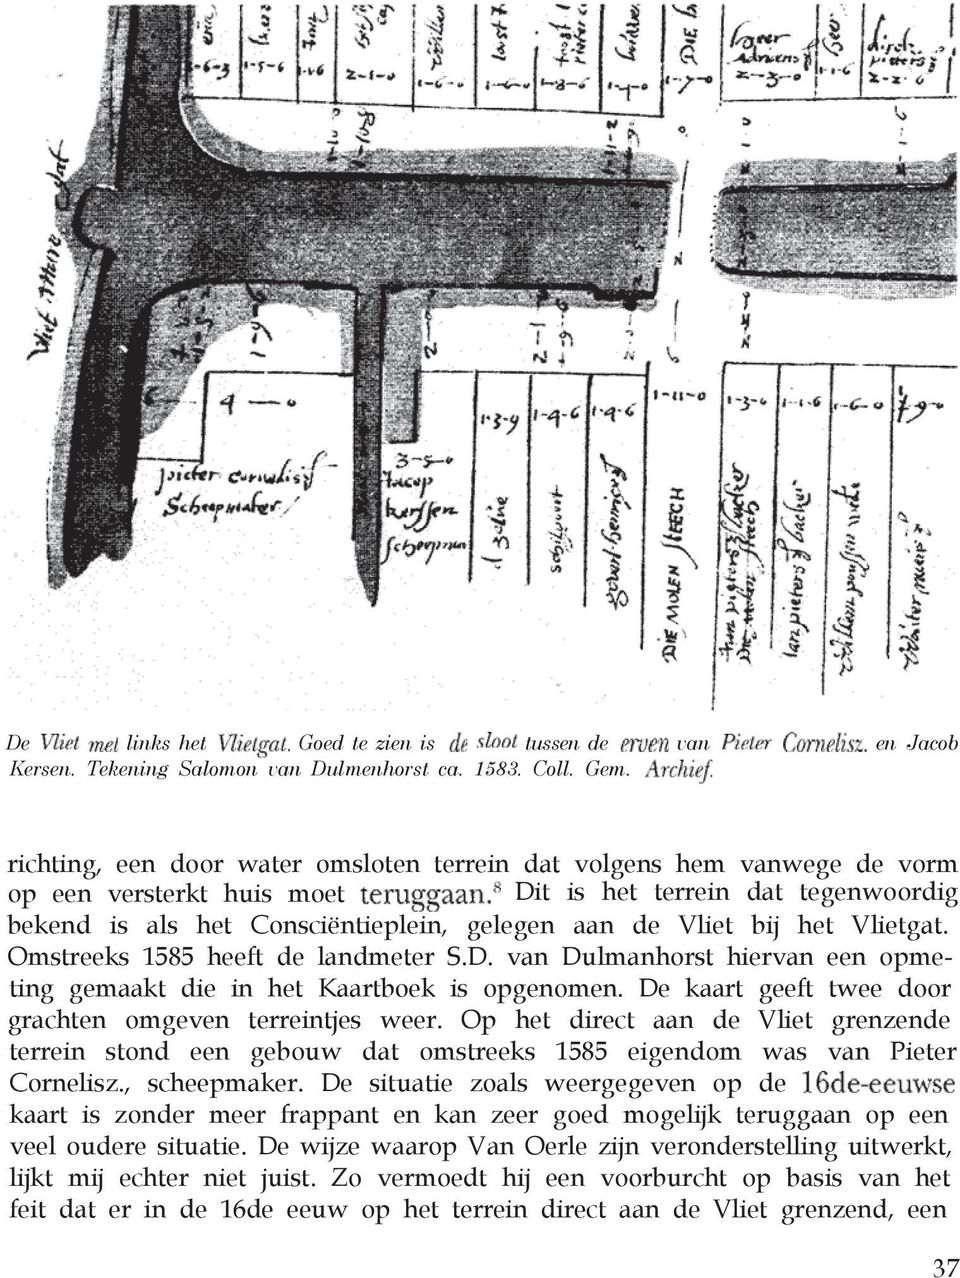 het Vlietgat. Omstreeks 1585 heeft de landmeter S.D. van Dulmanhorst hiervan een opmeting gemaakt die in het Kaartboek is opgenomen. De kaart geeft twee door grachten omgeven terreintjes weer.